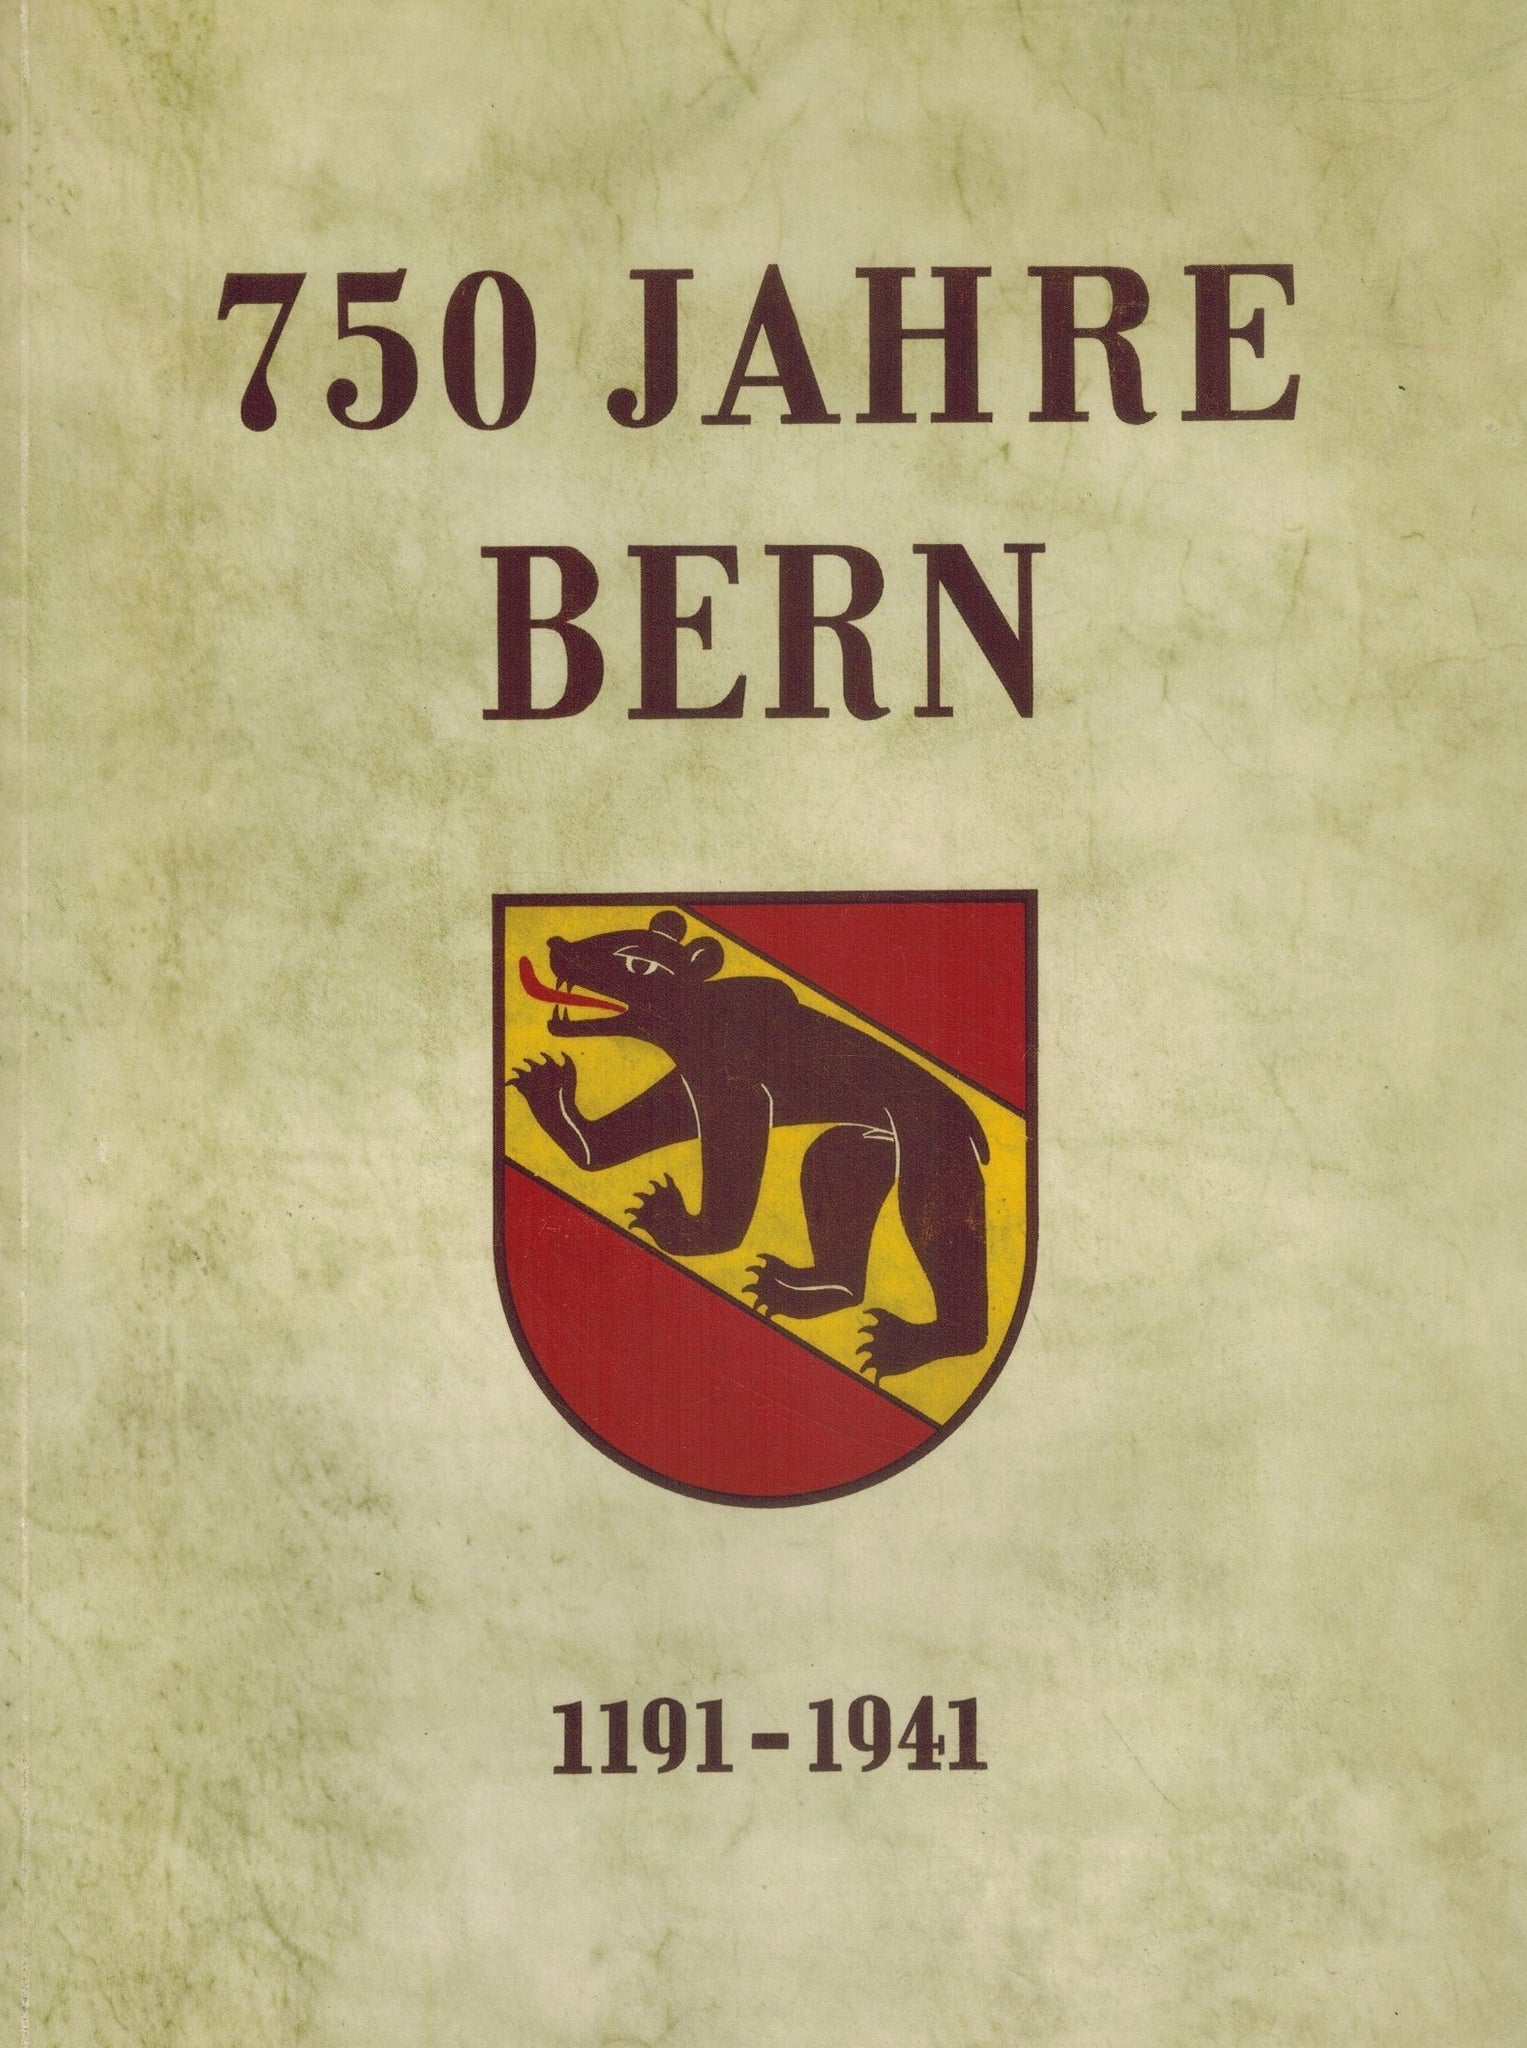 750 Jahre Bern 1191-1941  by Markwalder, H.